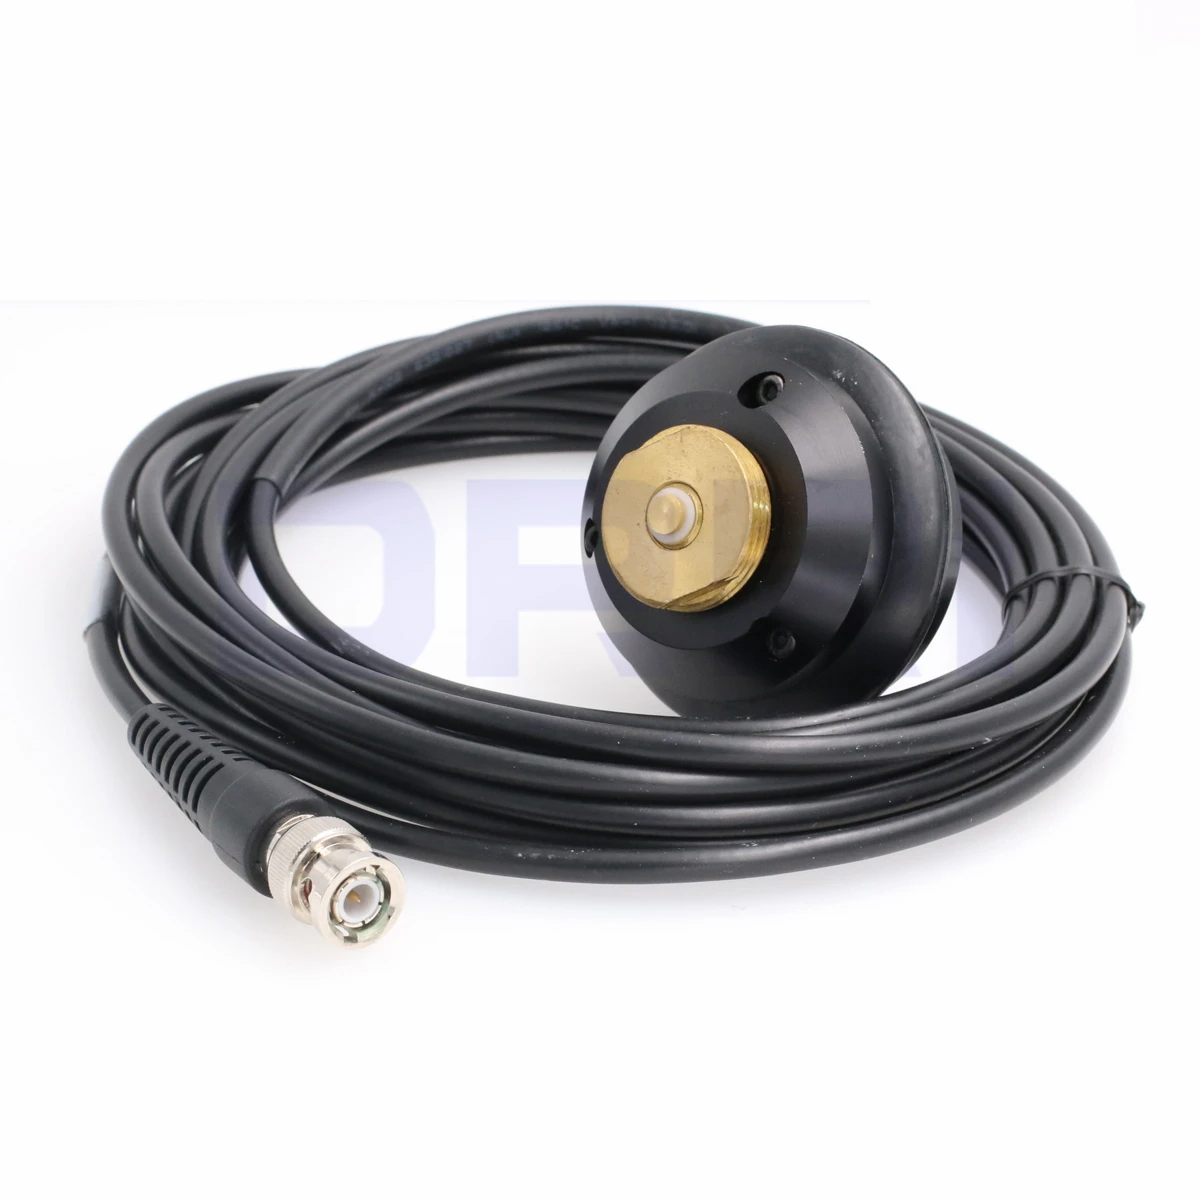 Trimble Whip Антенная мачта монтажный кабель BNC разъем для gps базовой станции|Кабели